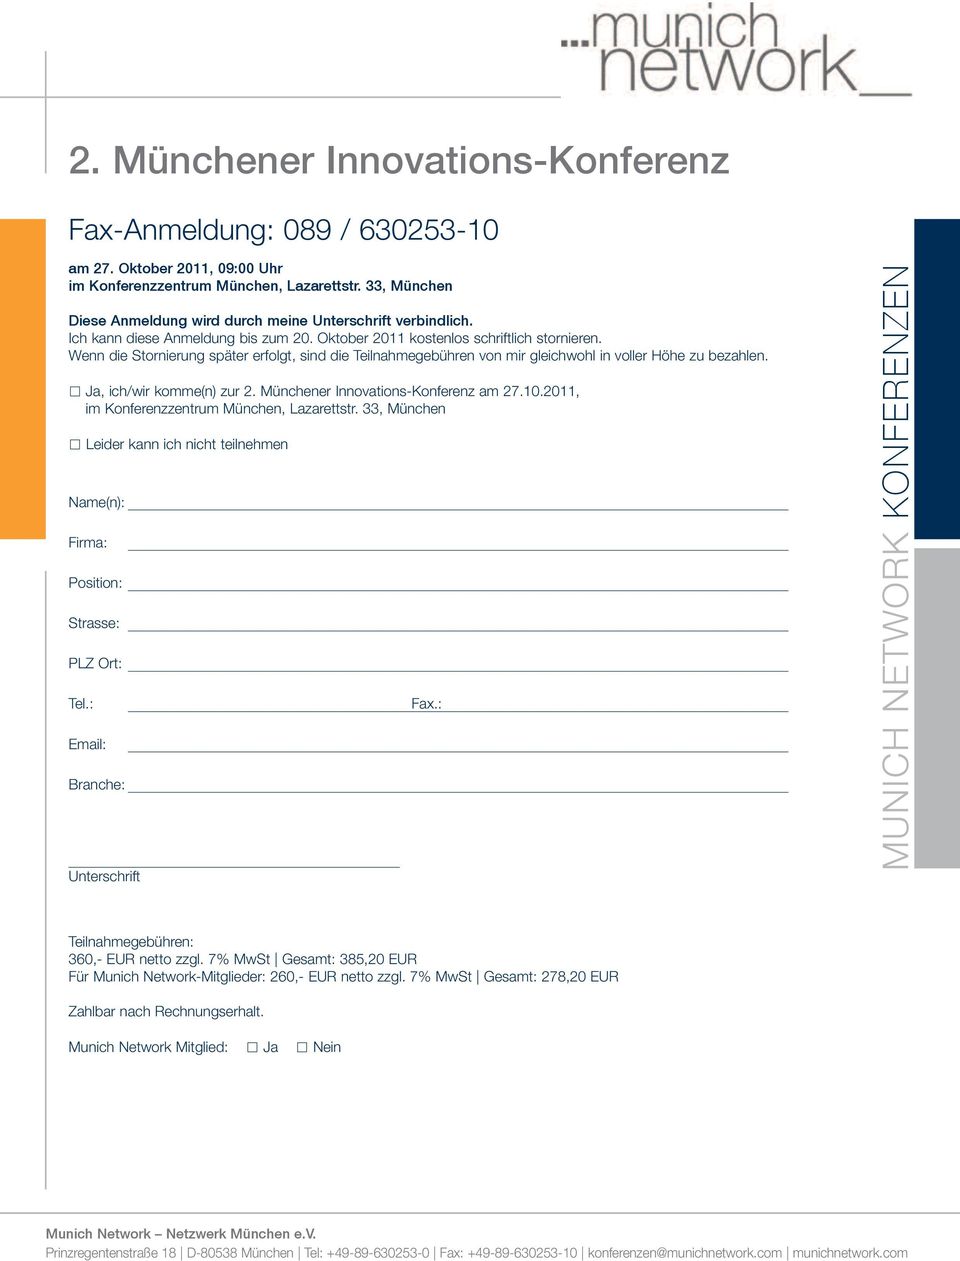 Ja, ich/wir komme(n) zur 2. Münchener Innovations-Konferenz am 27.10.2011, im Konferenzzentrum München, Lazarettstr.